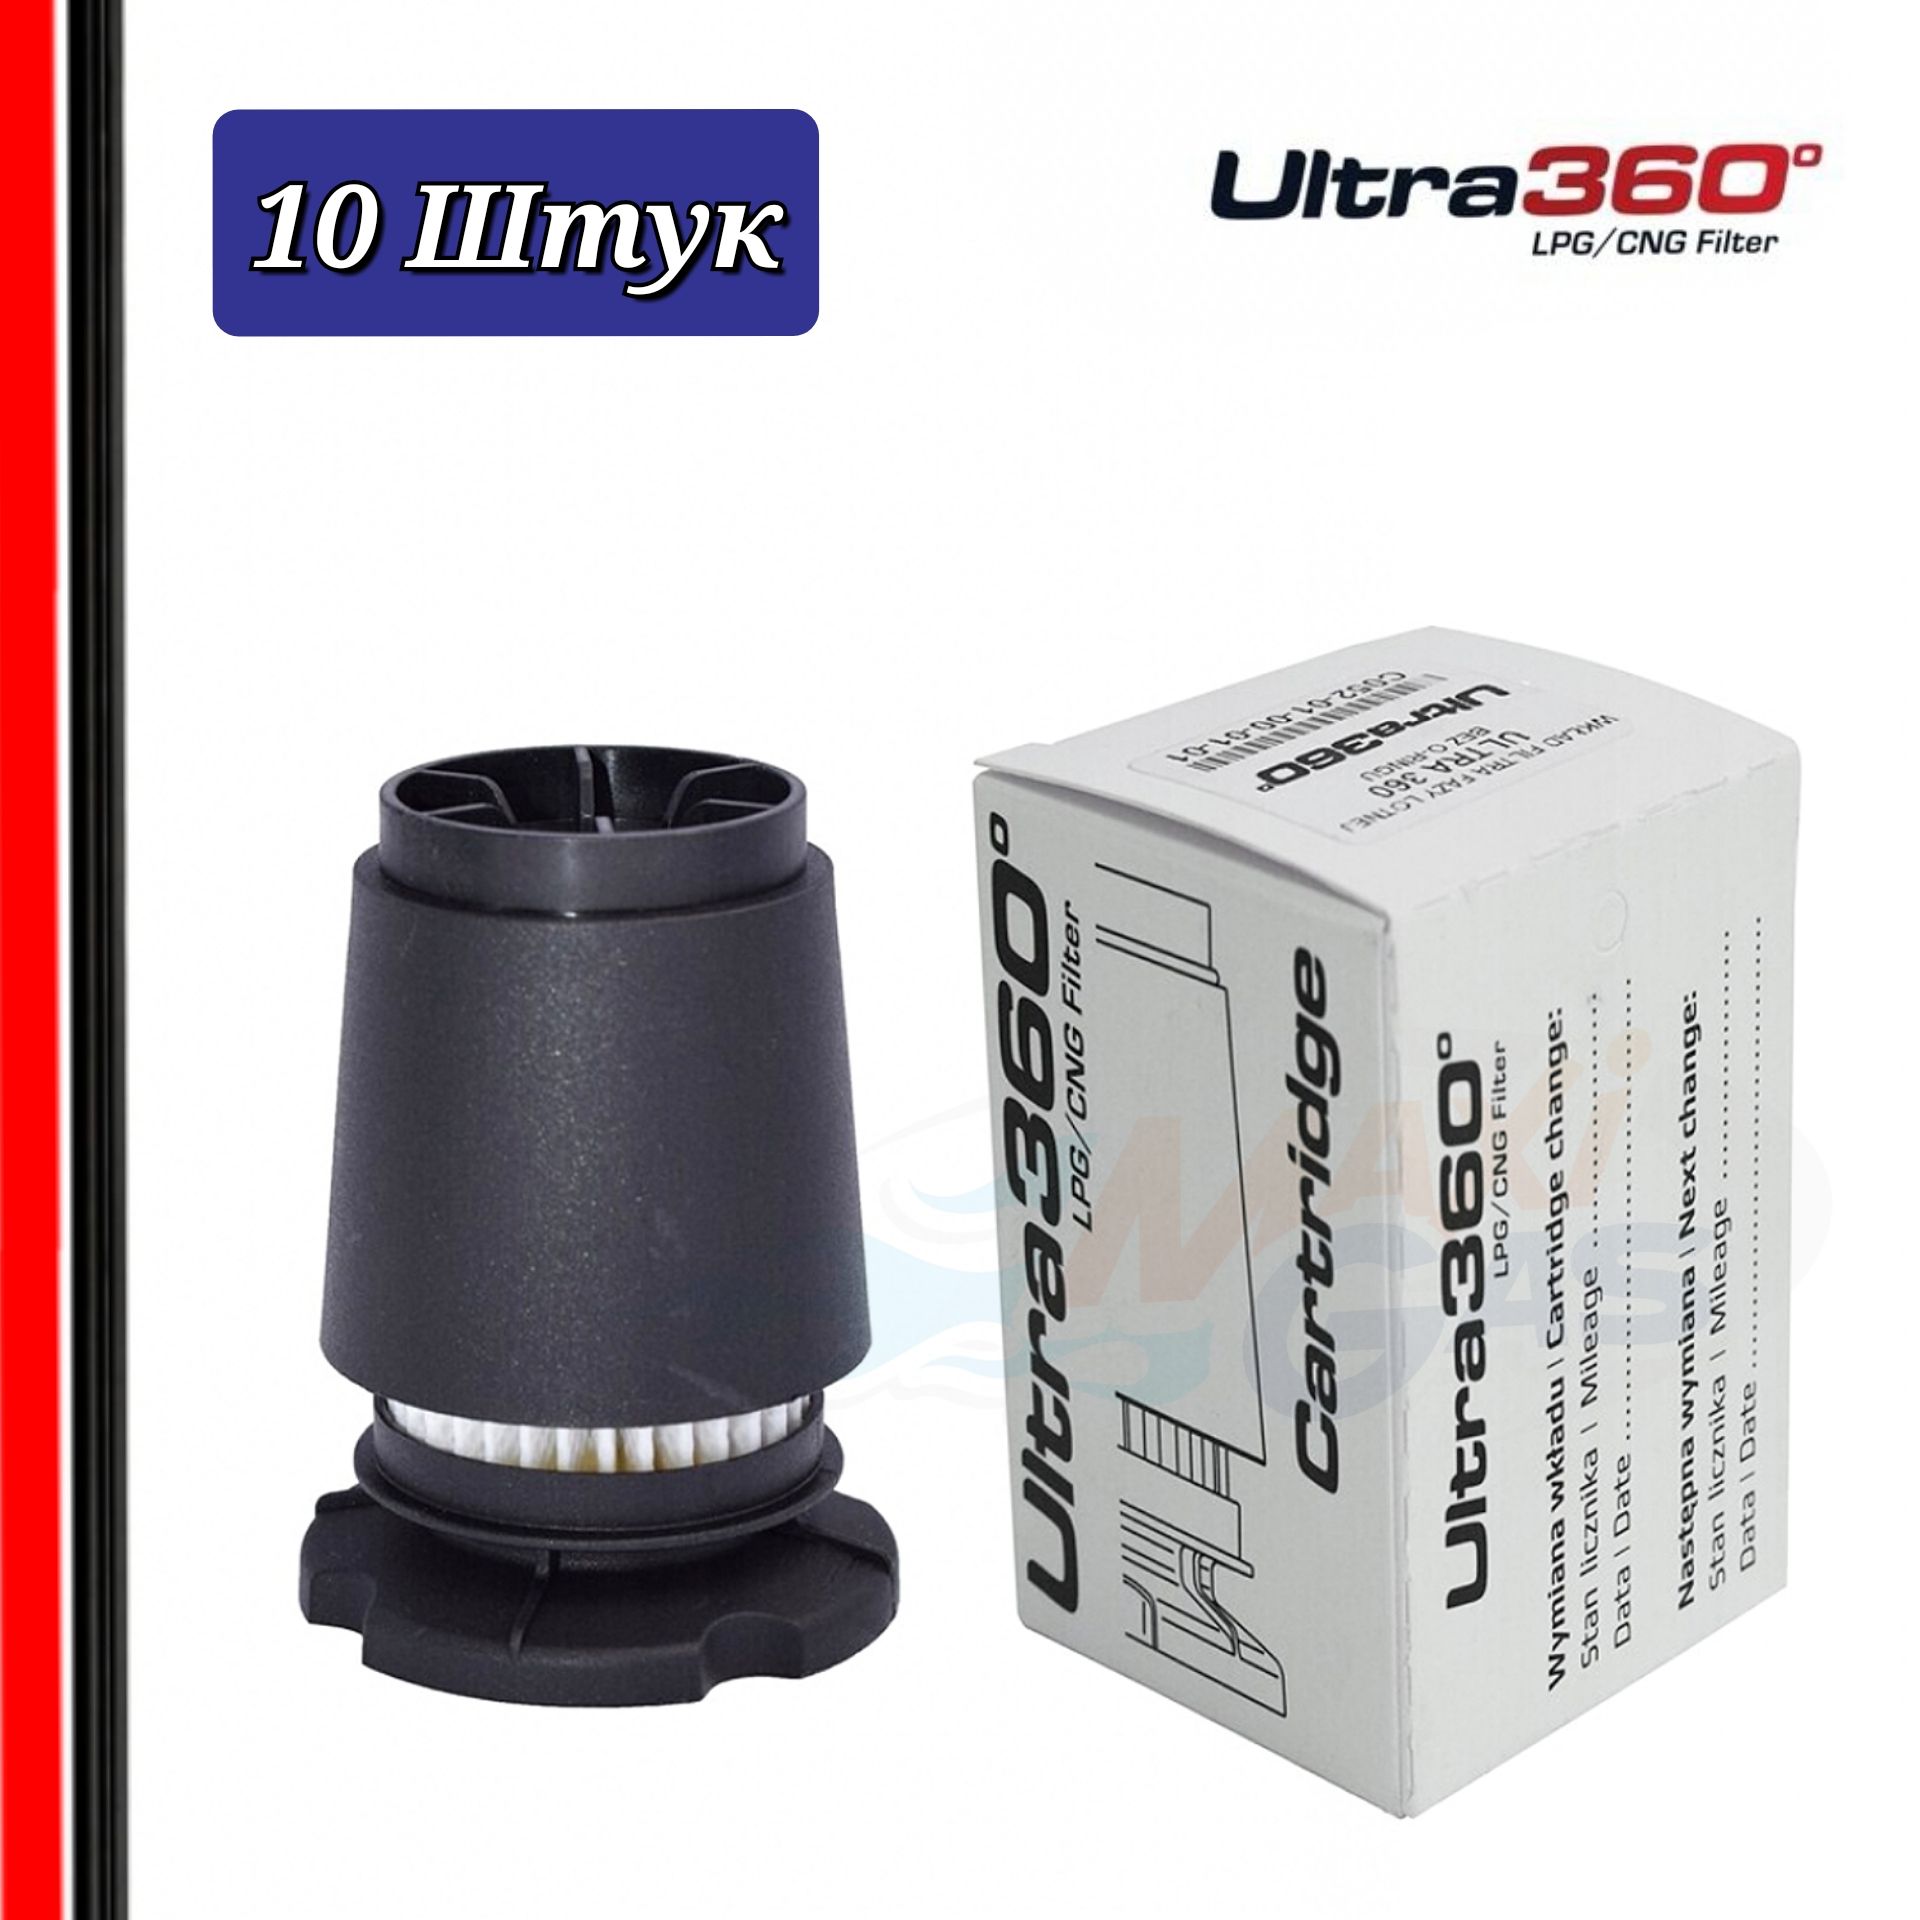 Фильтр картридж ГБО ALEX ULTRA 360 для вихревого газового отстойника 10 штук